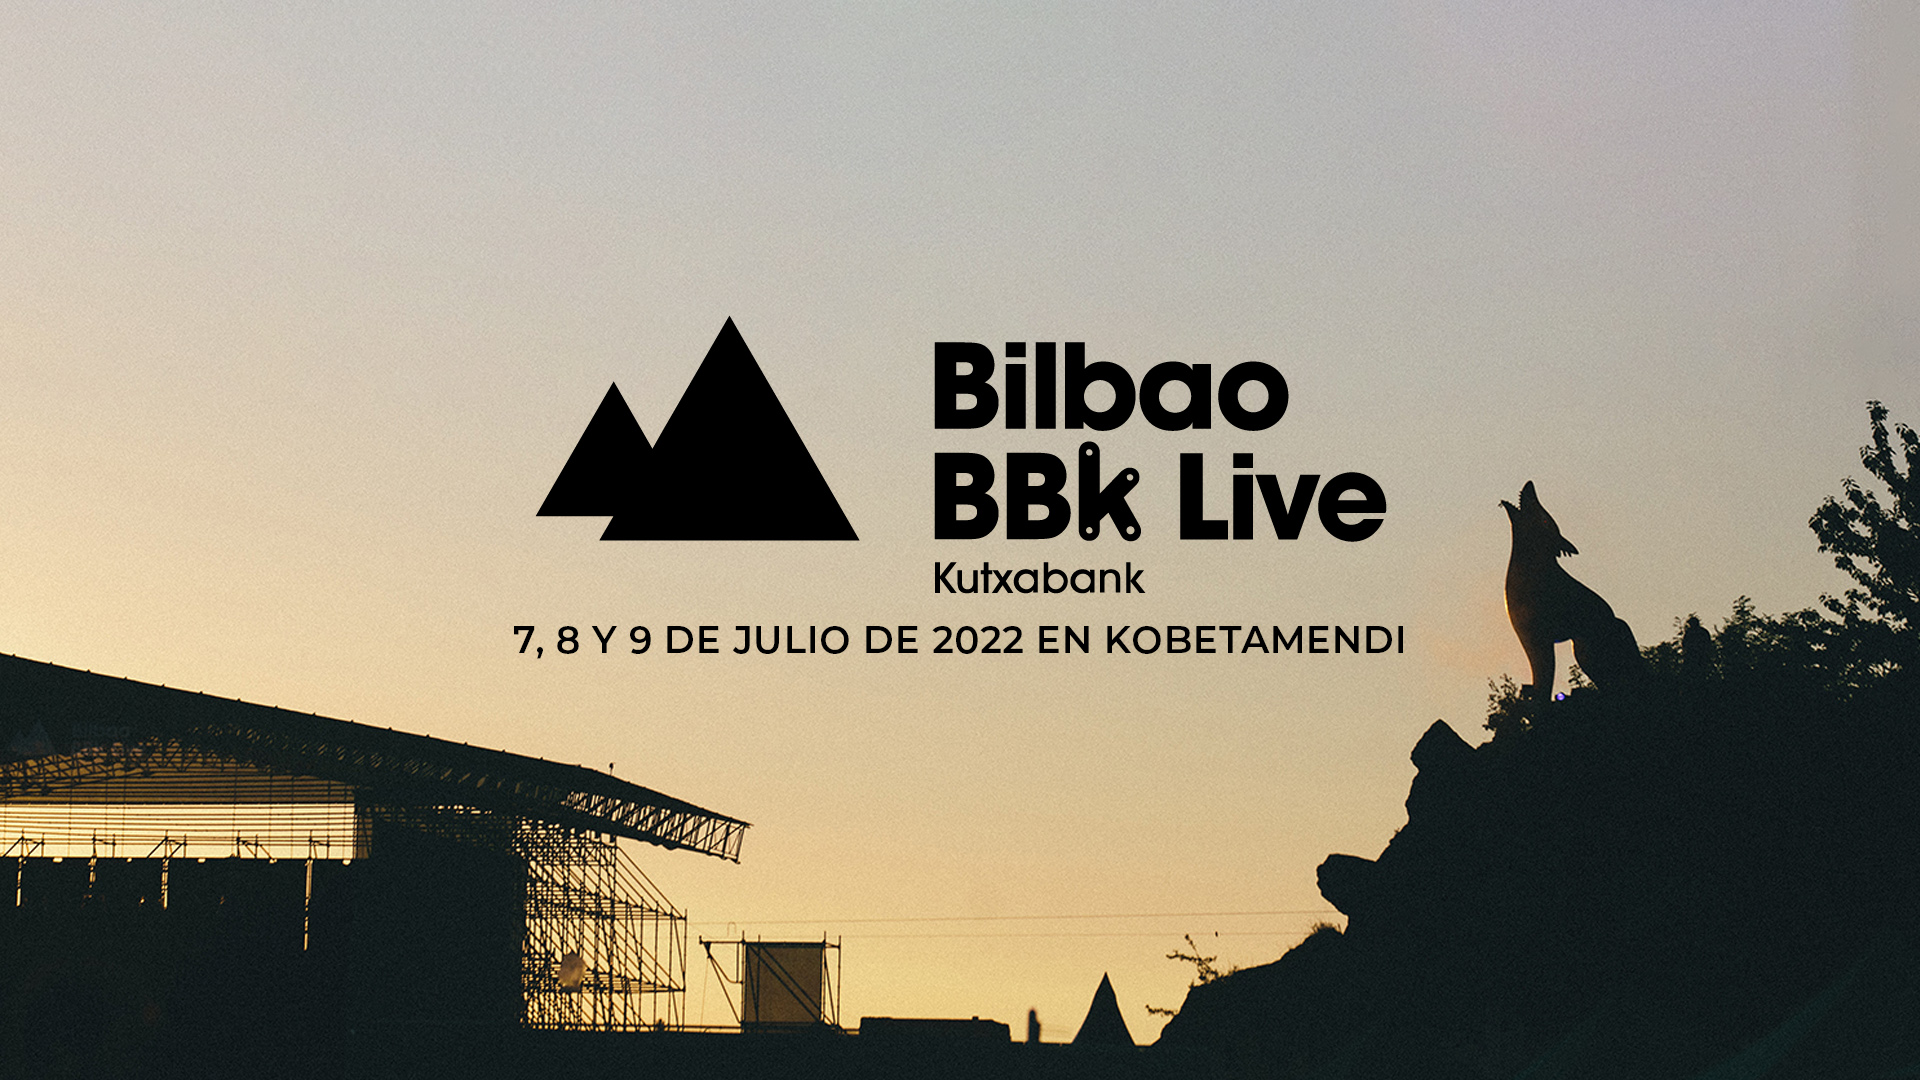 Bilbao BBK Live celebra su 15º aniversario a lo grande